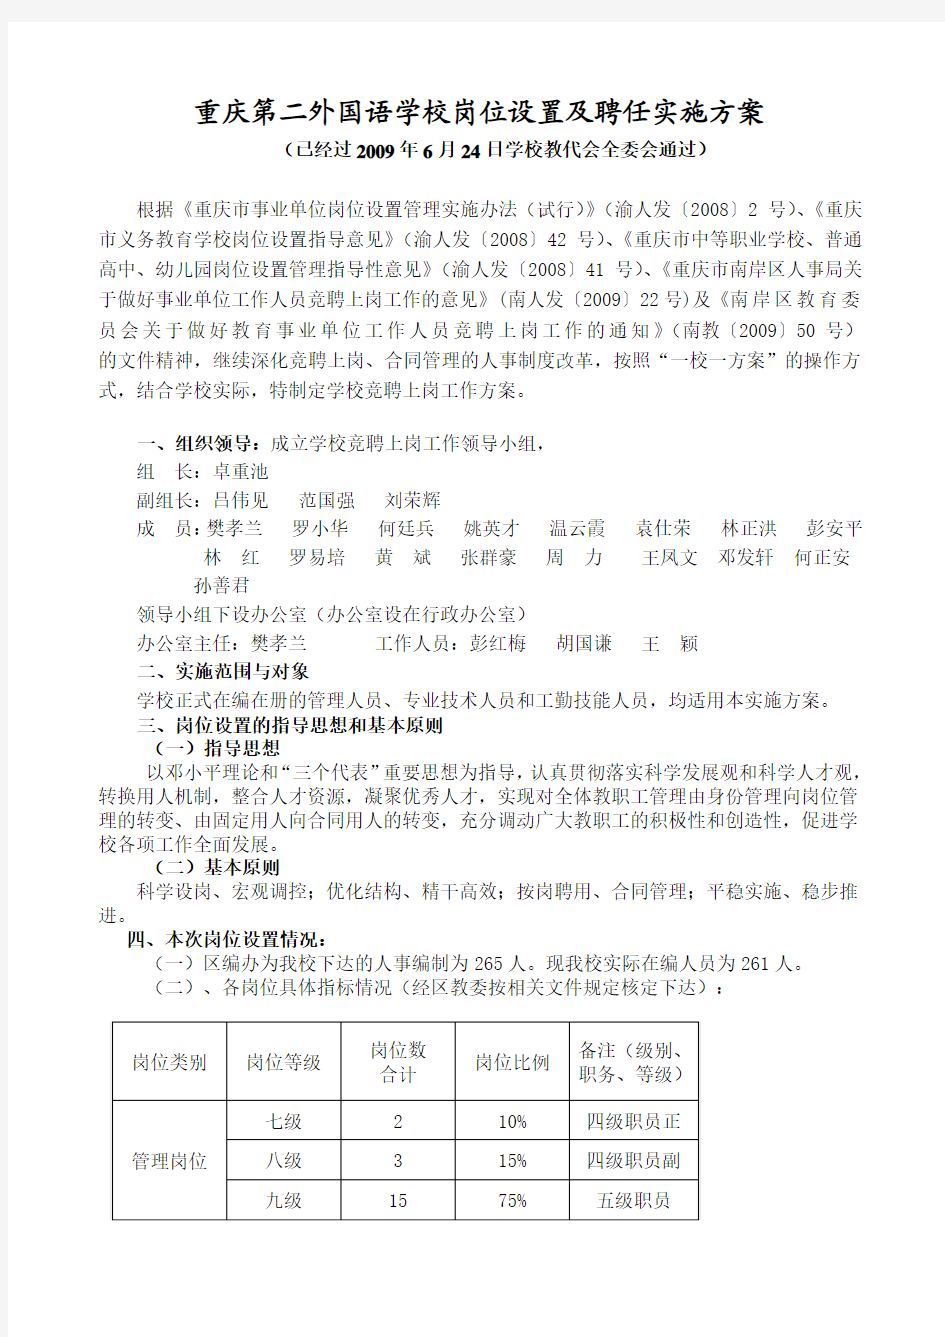 重庆第二外国语学校岗位设置及聘任实施方案